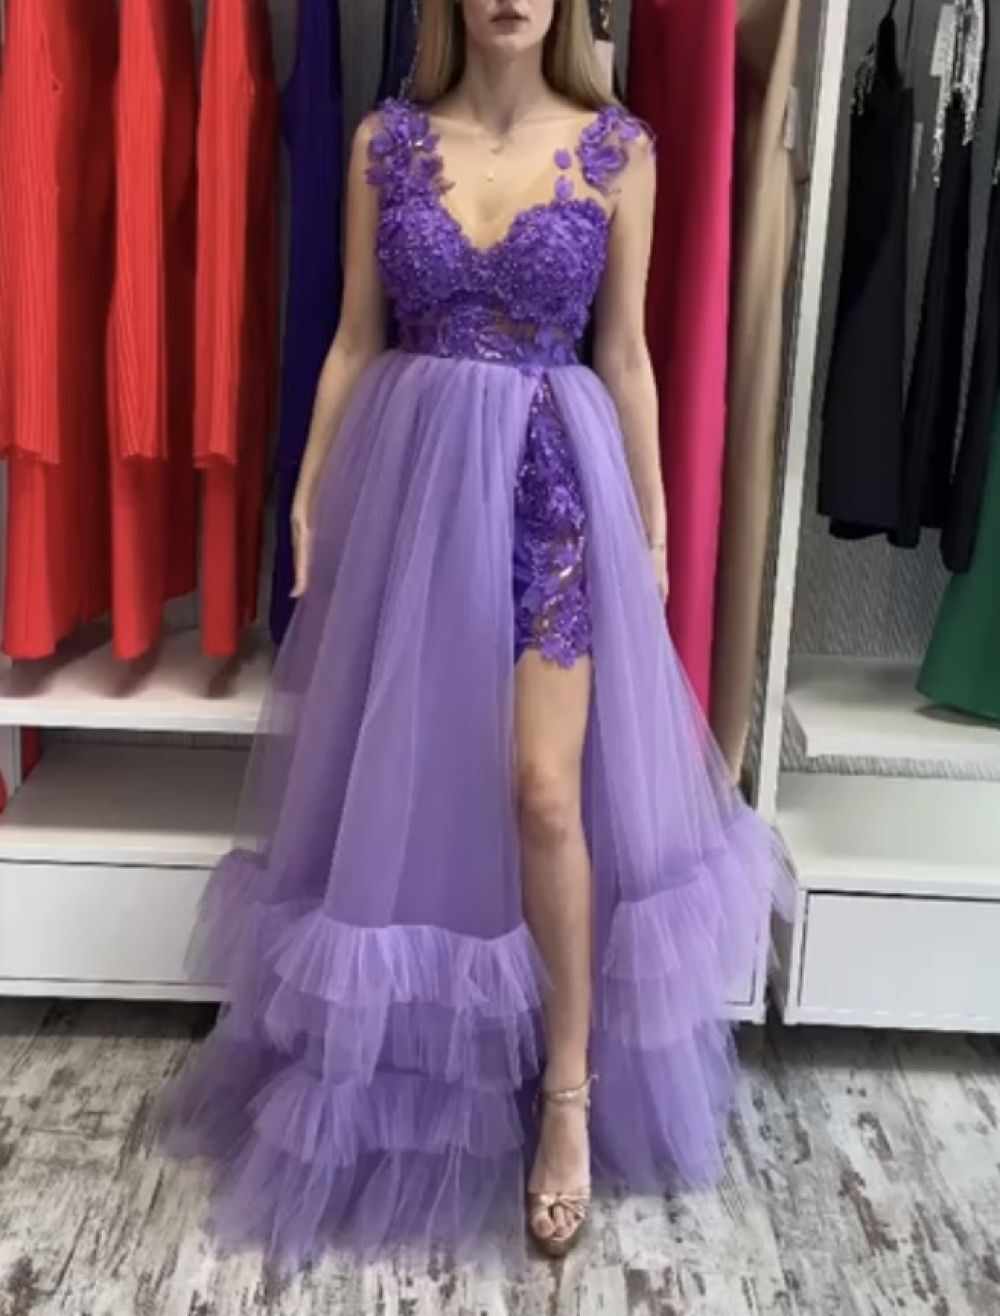 Rochie lunga violet din tull cu volane la baza